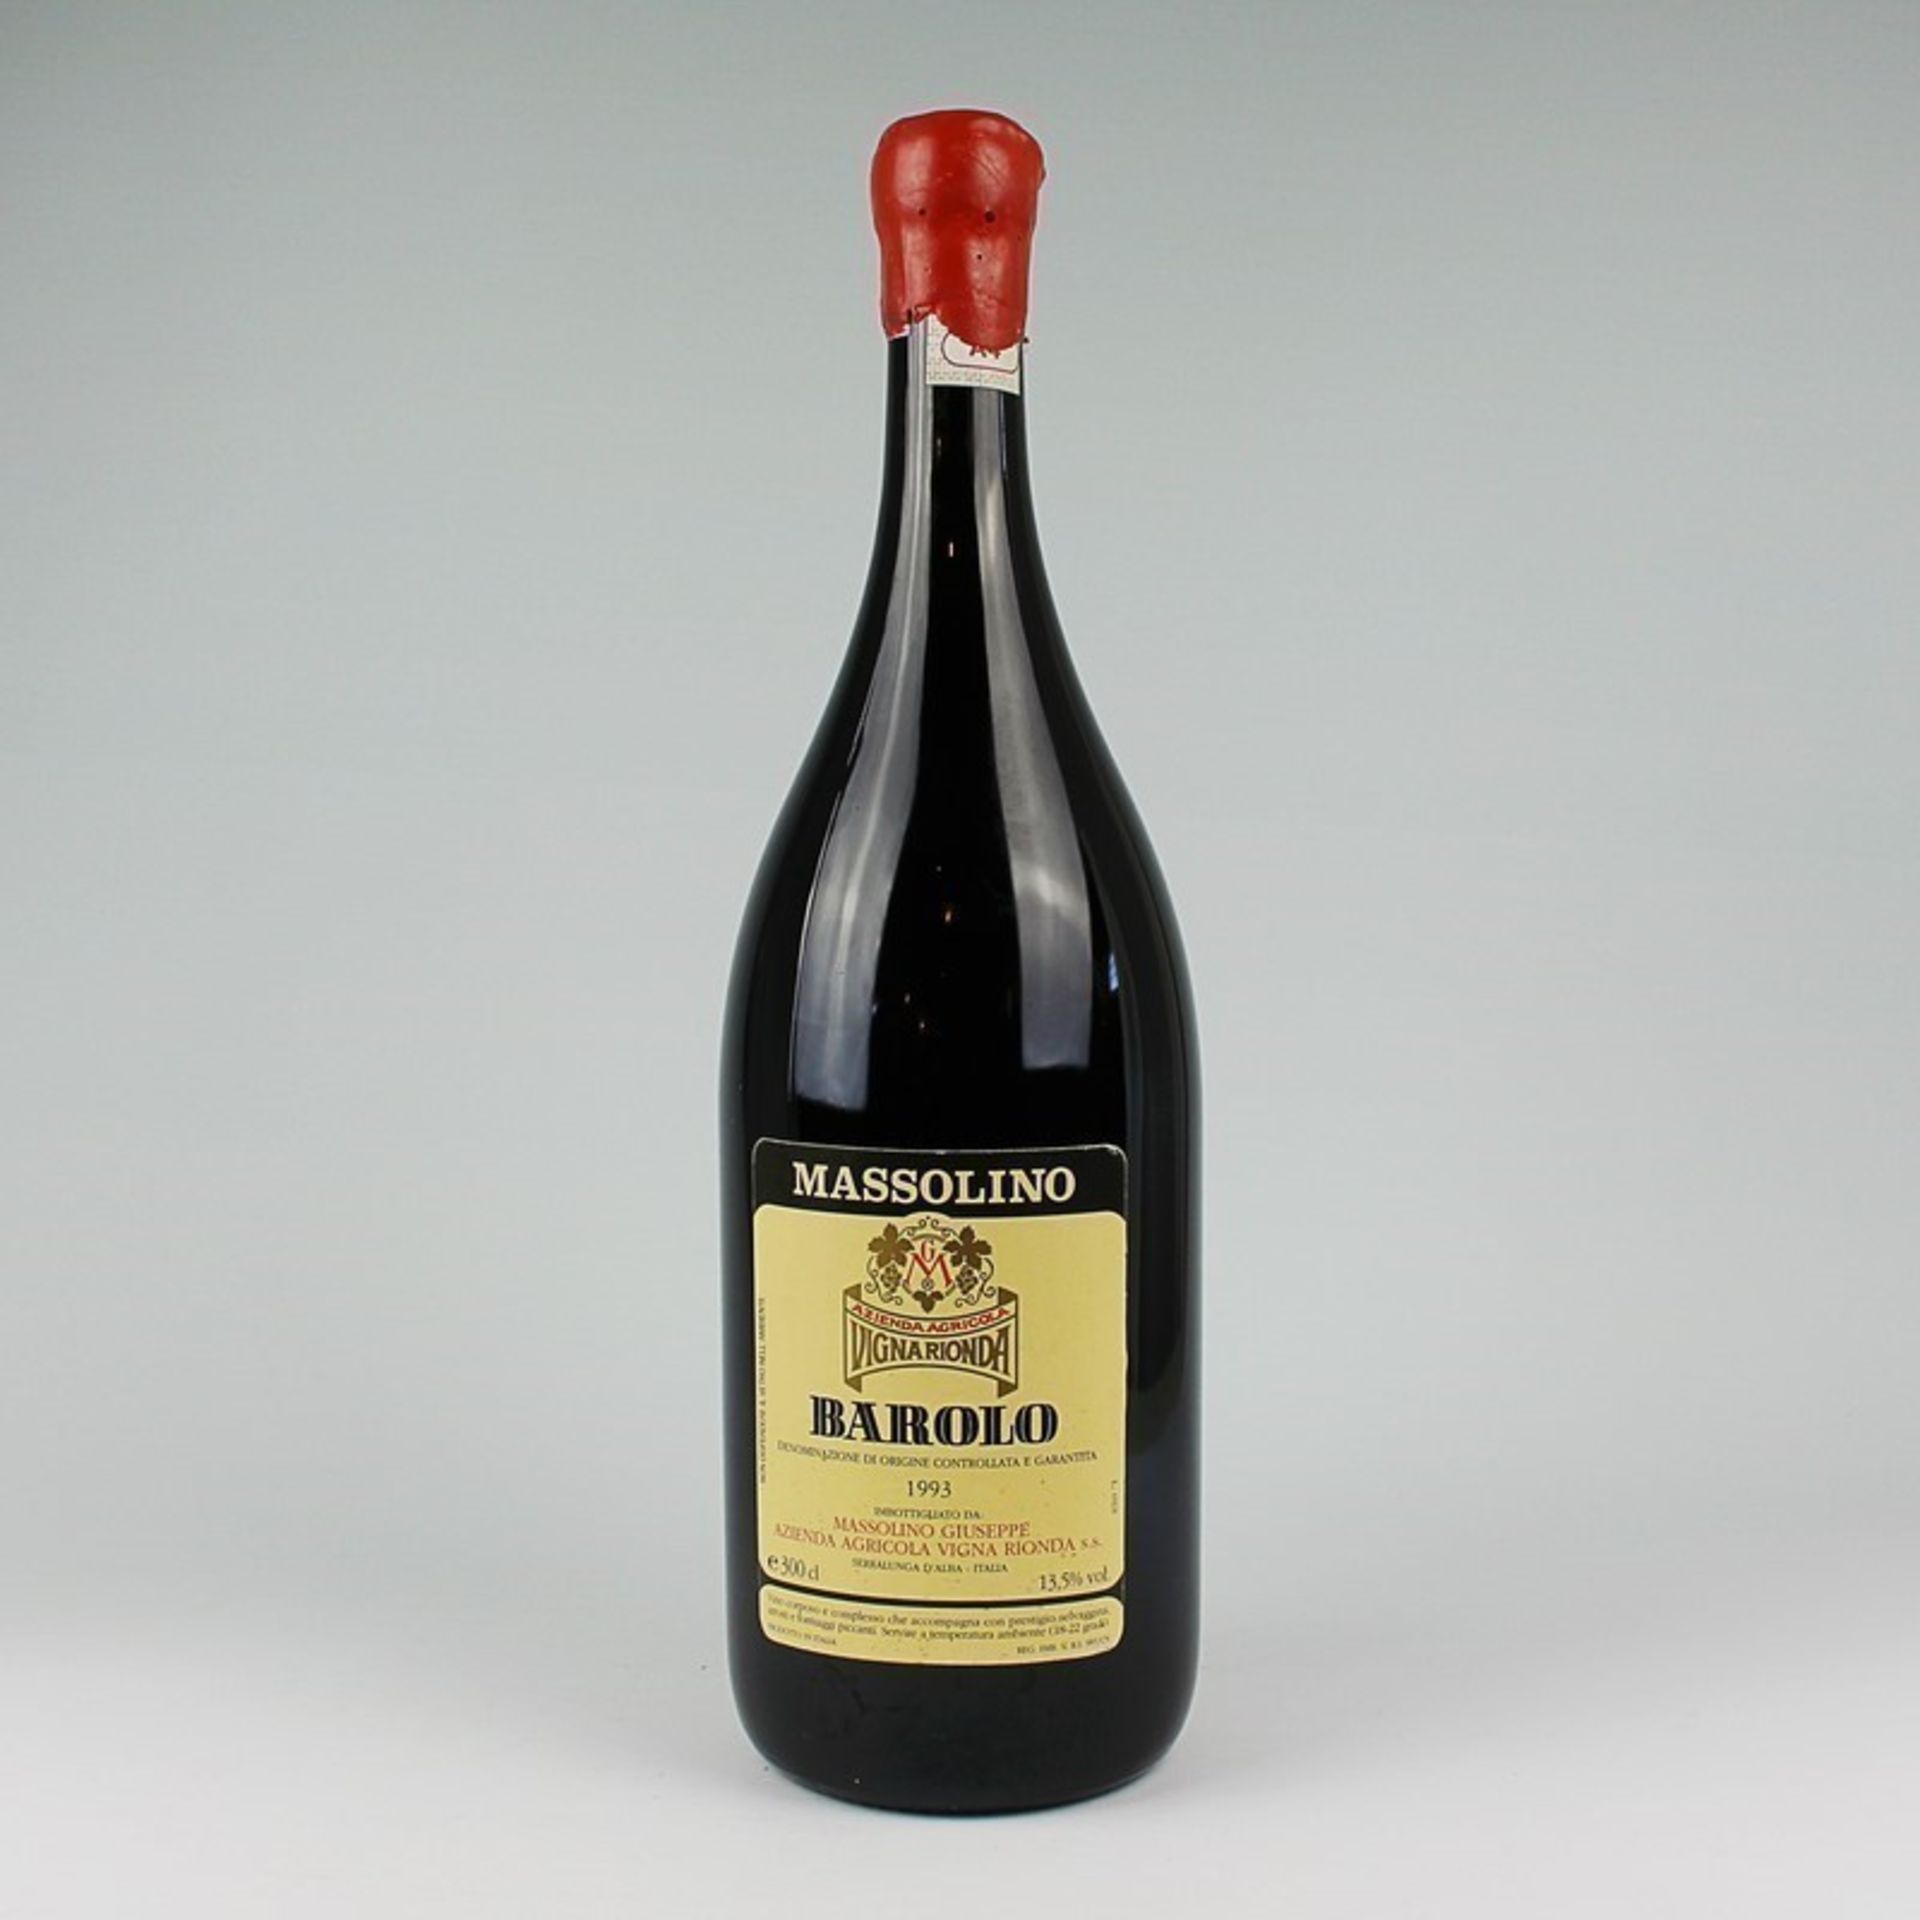 Rotwein - Magnumflasche Italien, Barolo, Massolino, Vigna Ronda, 1993, 13,5%, 300cl, ungeöffnet,